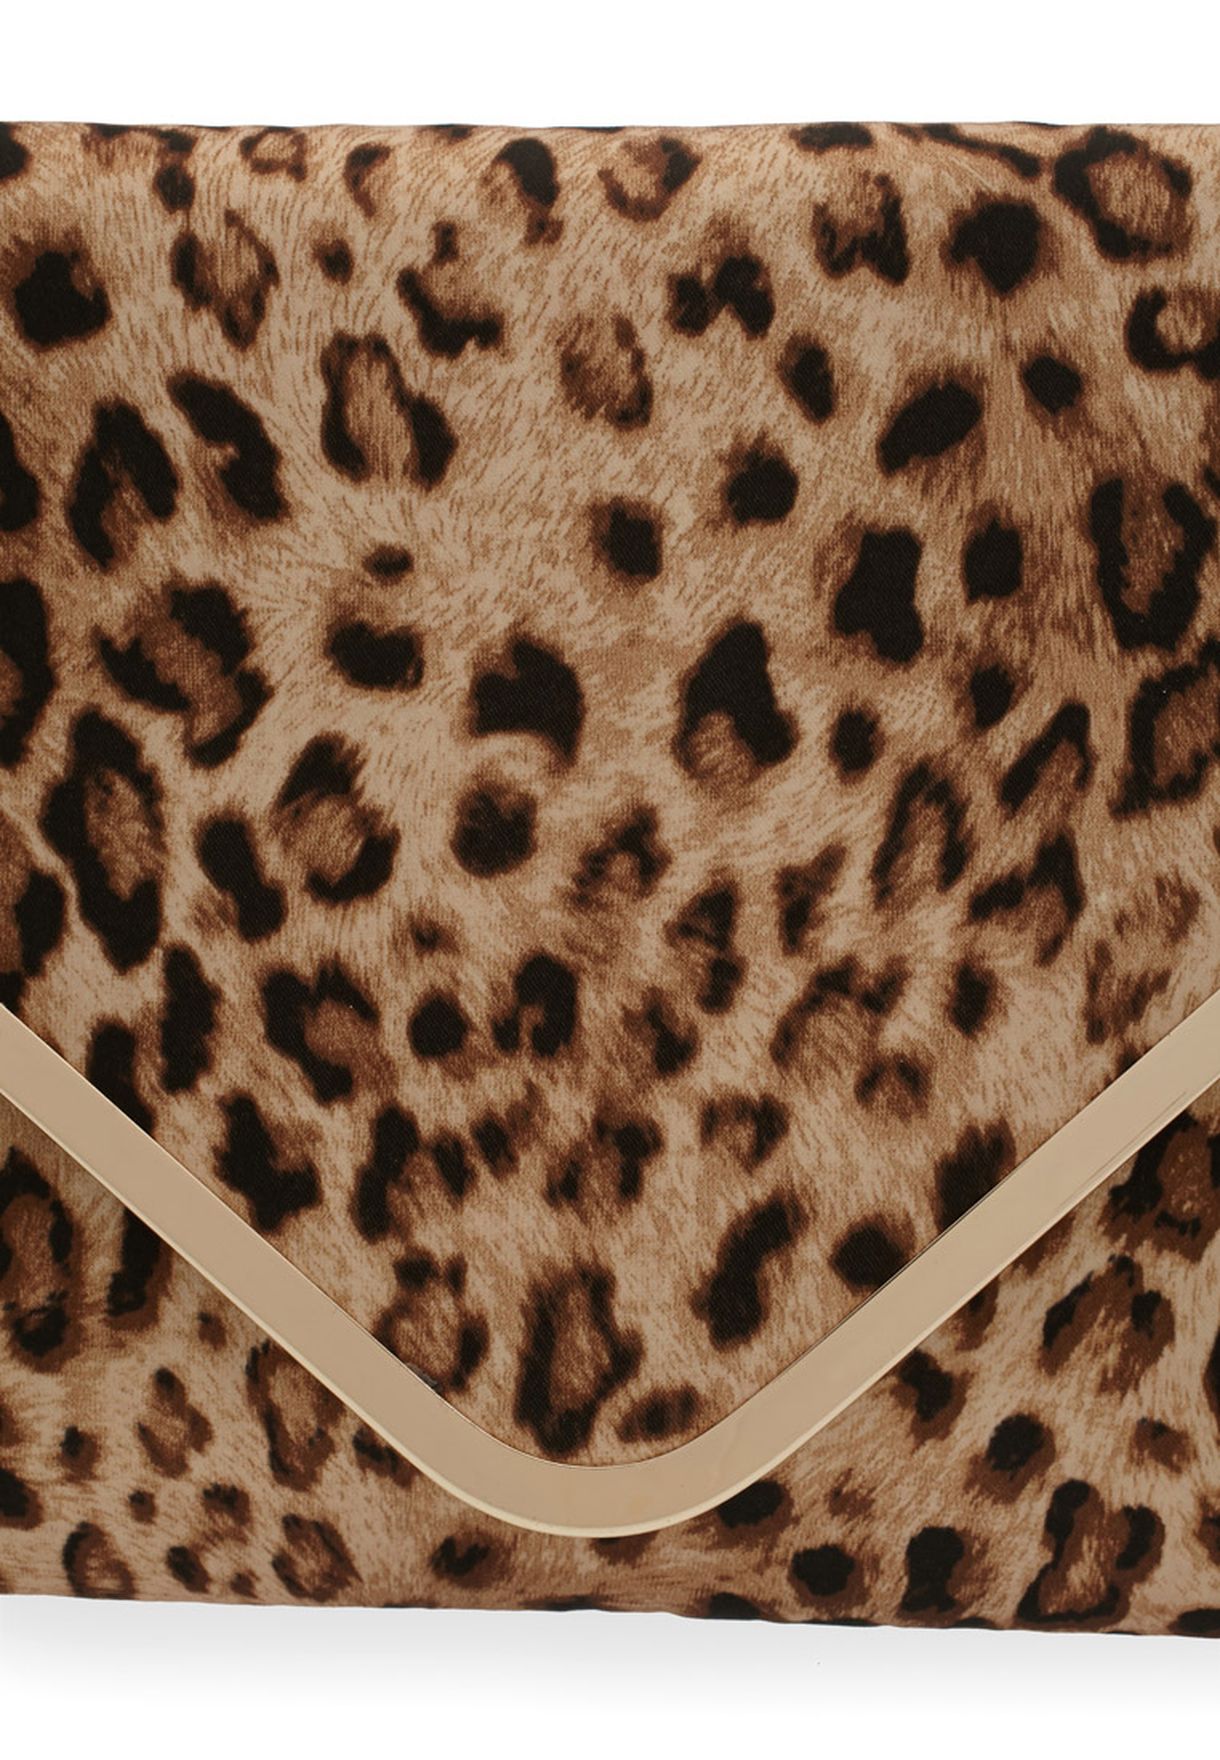 Victoria delef Clutch black-cream leopard pattern Bags Clutches 